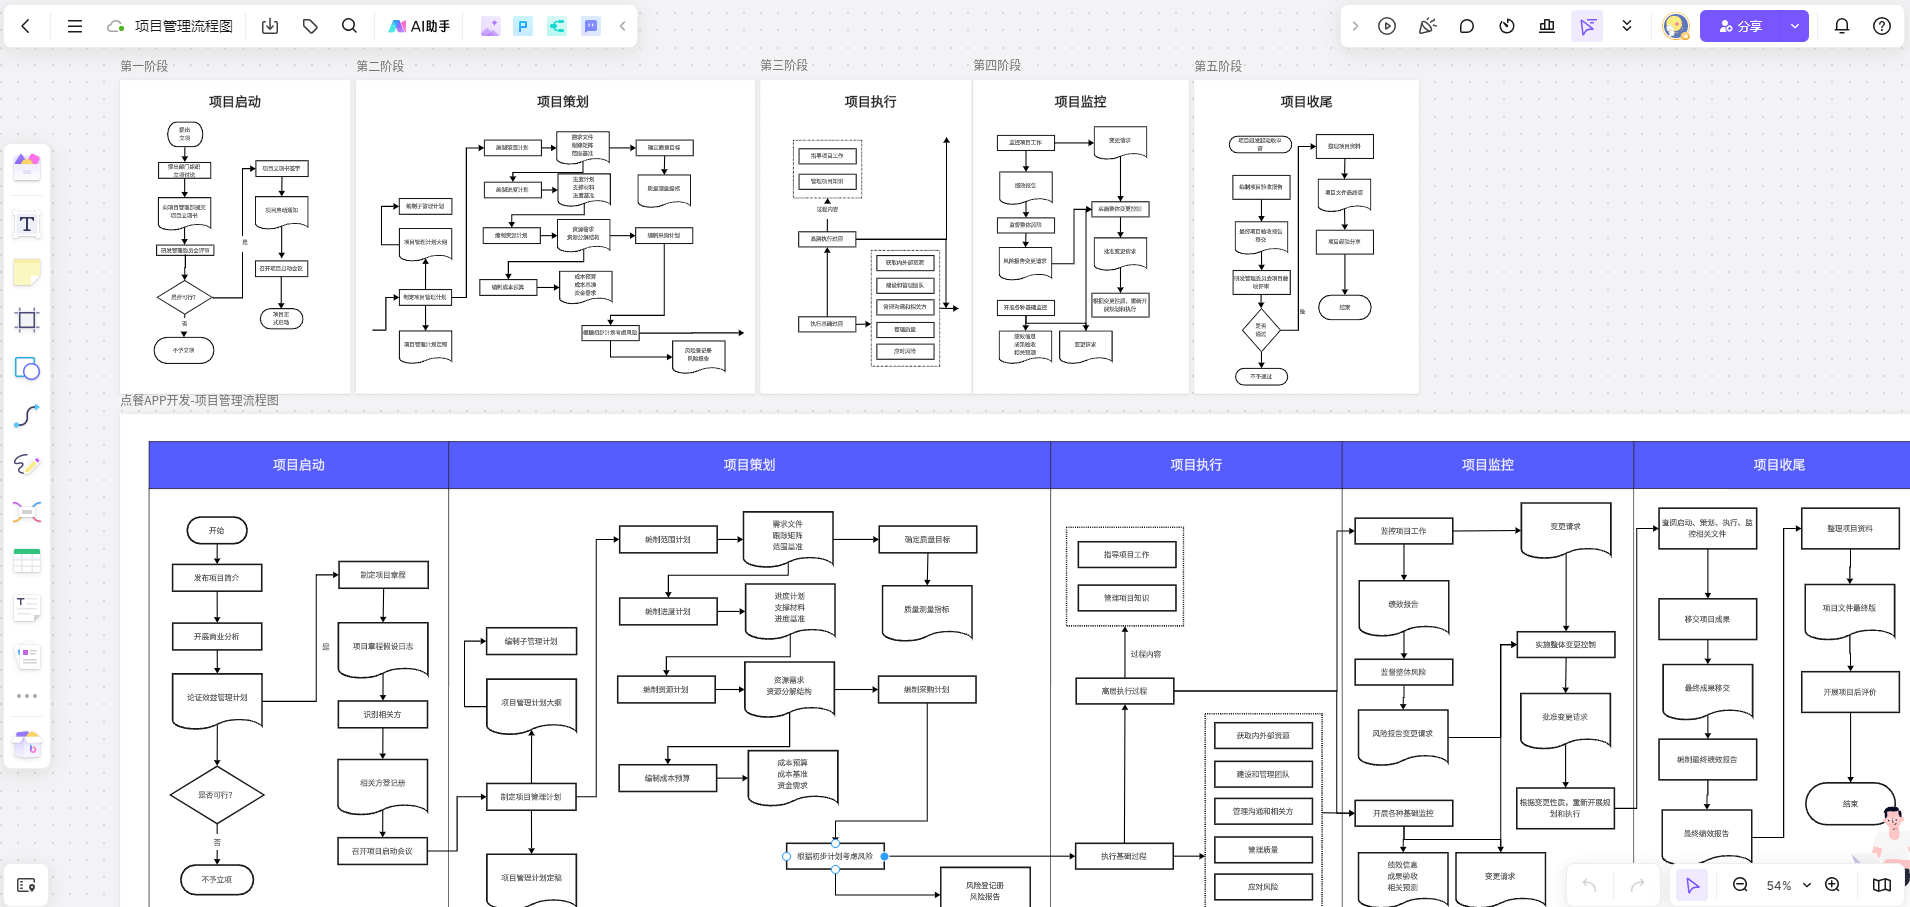 项目管理流程图模板